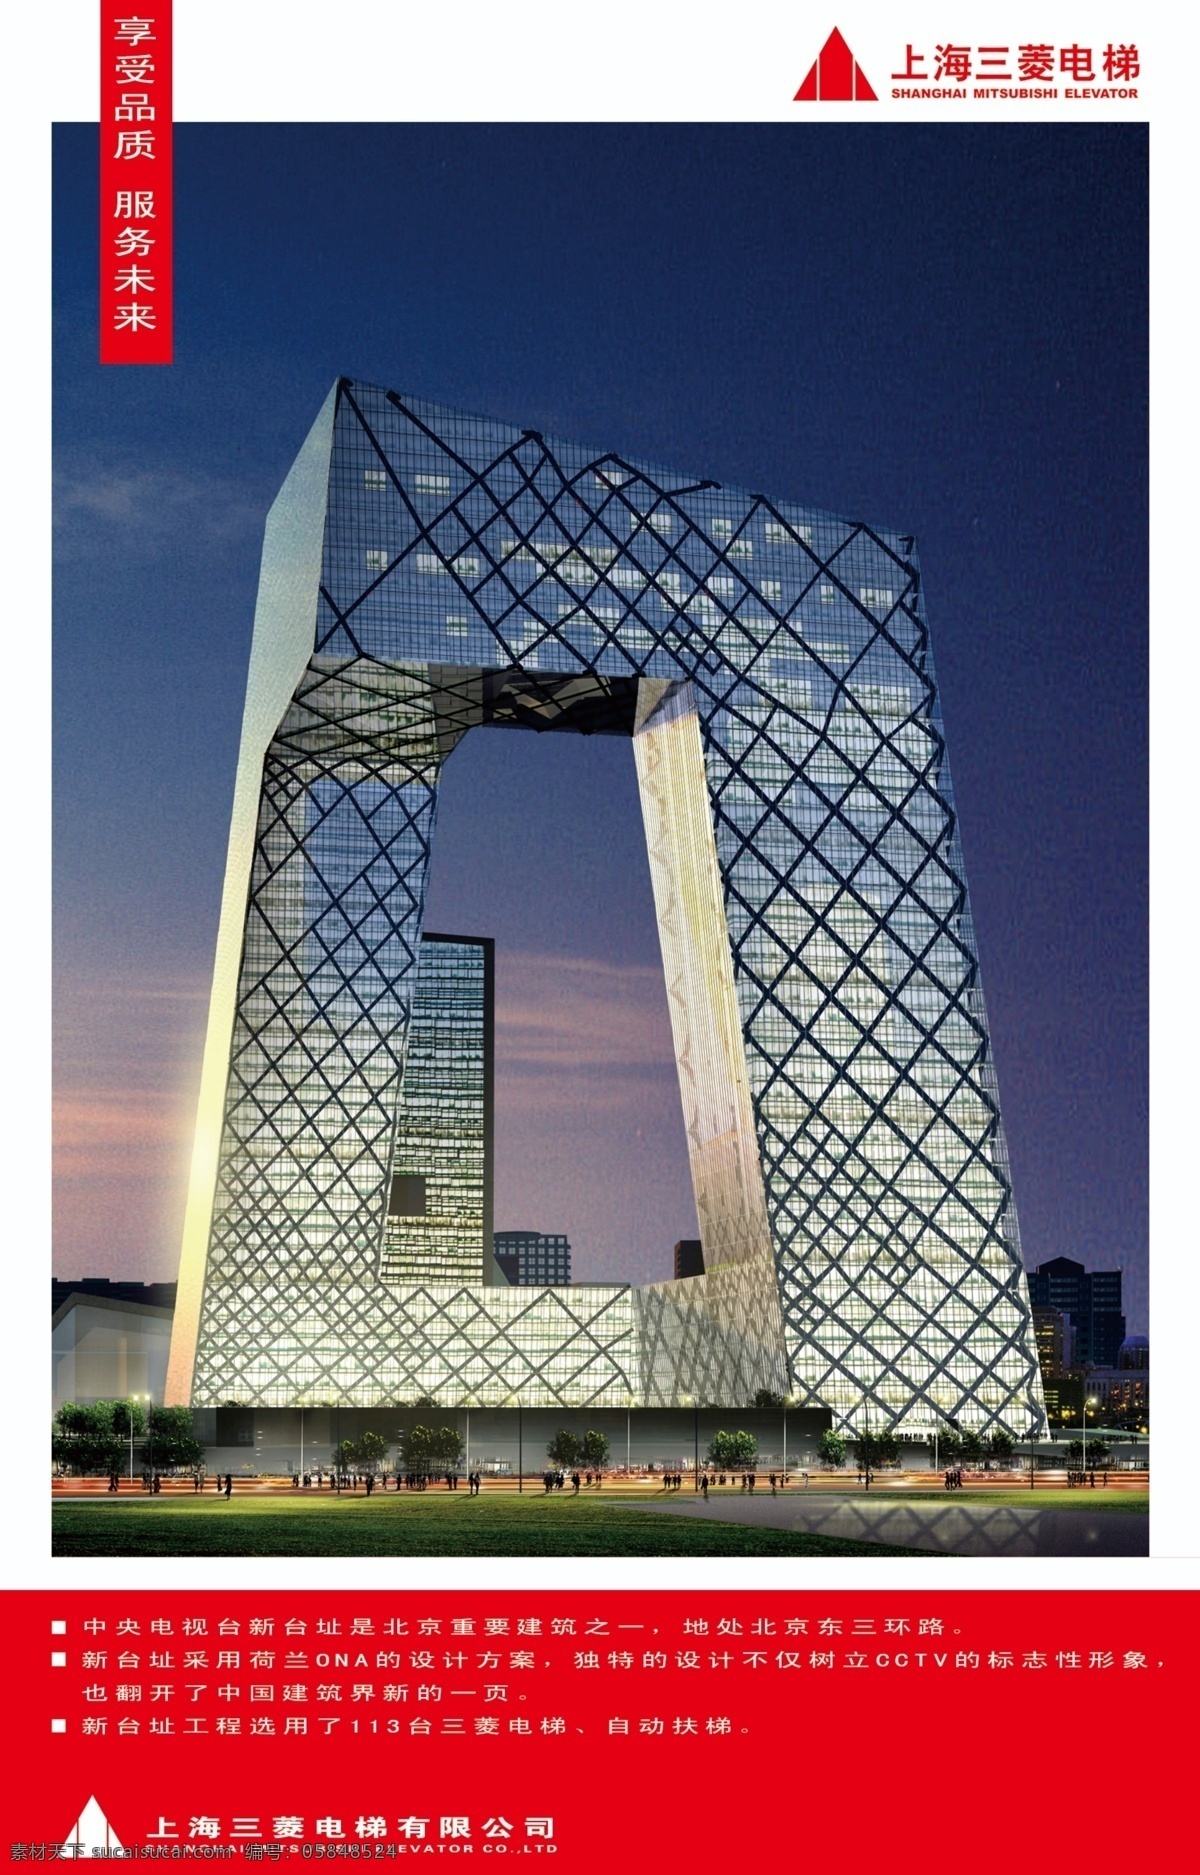 中央电视台 新址 洽谈区 上海 三菱 电梯 有限 公司 效果图 建筑 现代 形象 宣传海报 分层 源文件